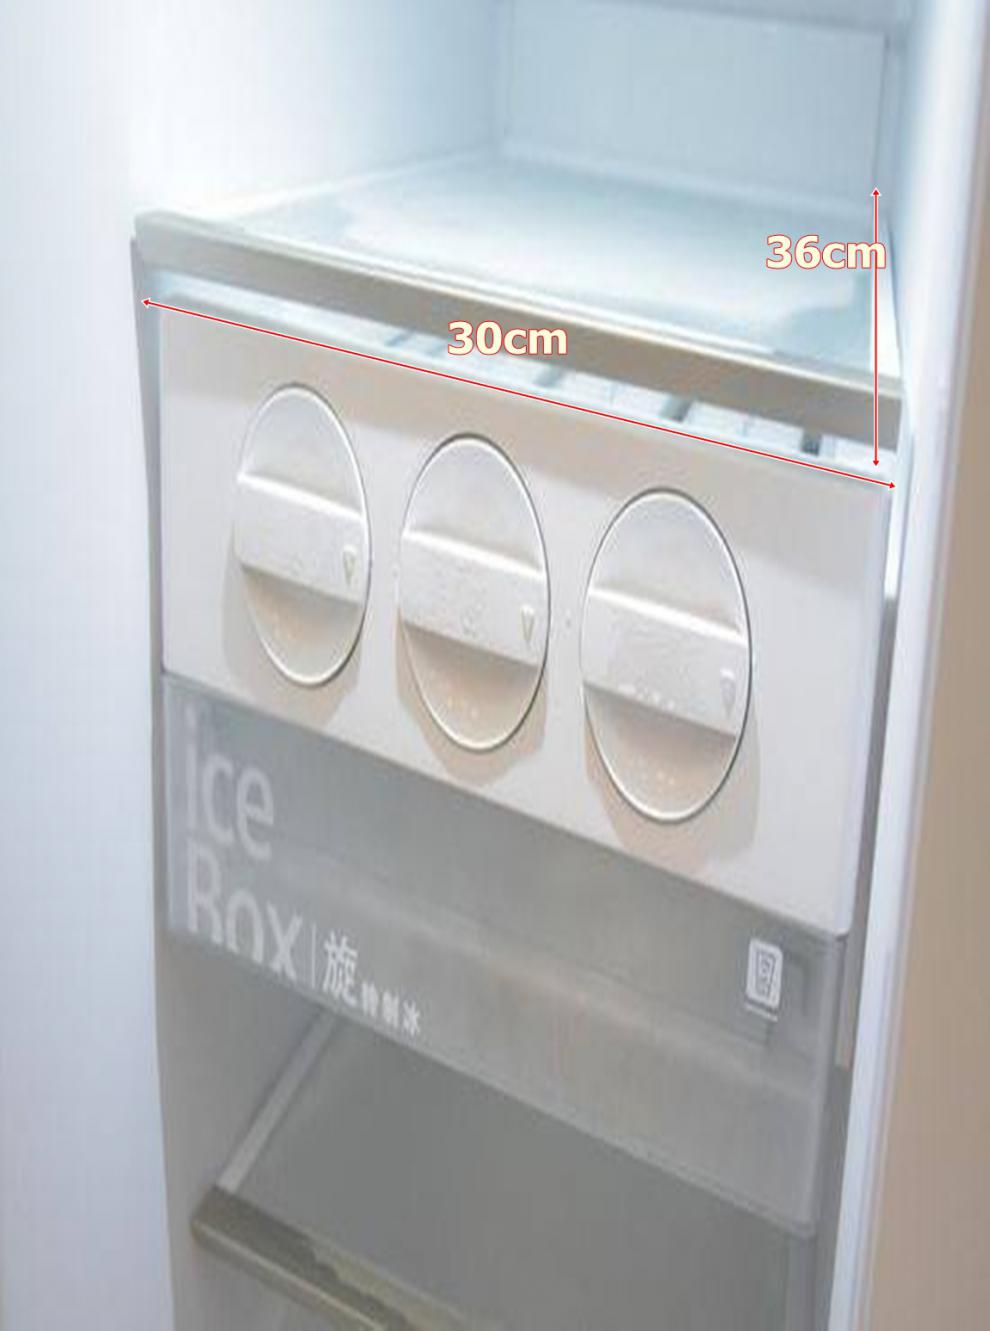 西门子博西华对开门冰箱旋转制冰盒组件bcd610w加装 导轨一对